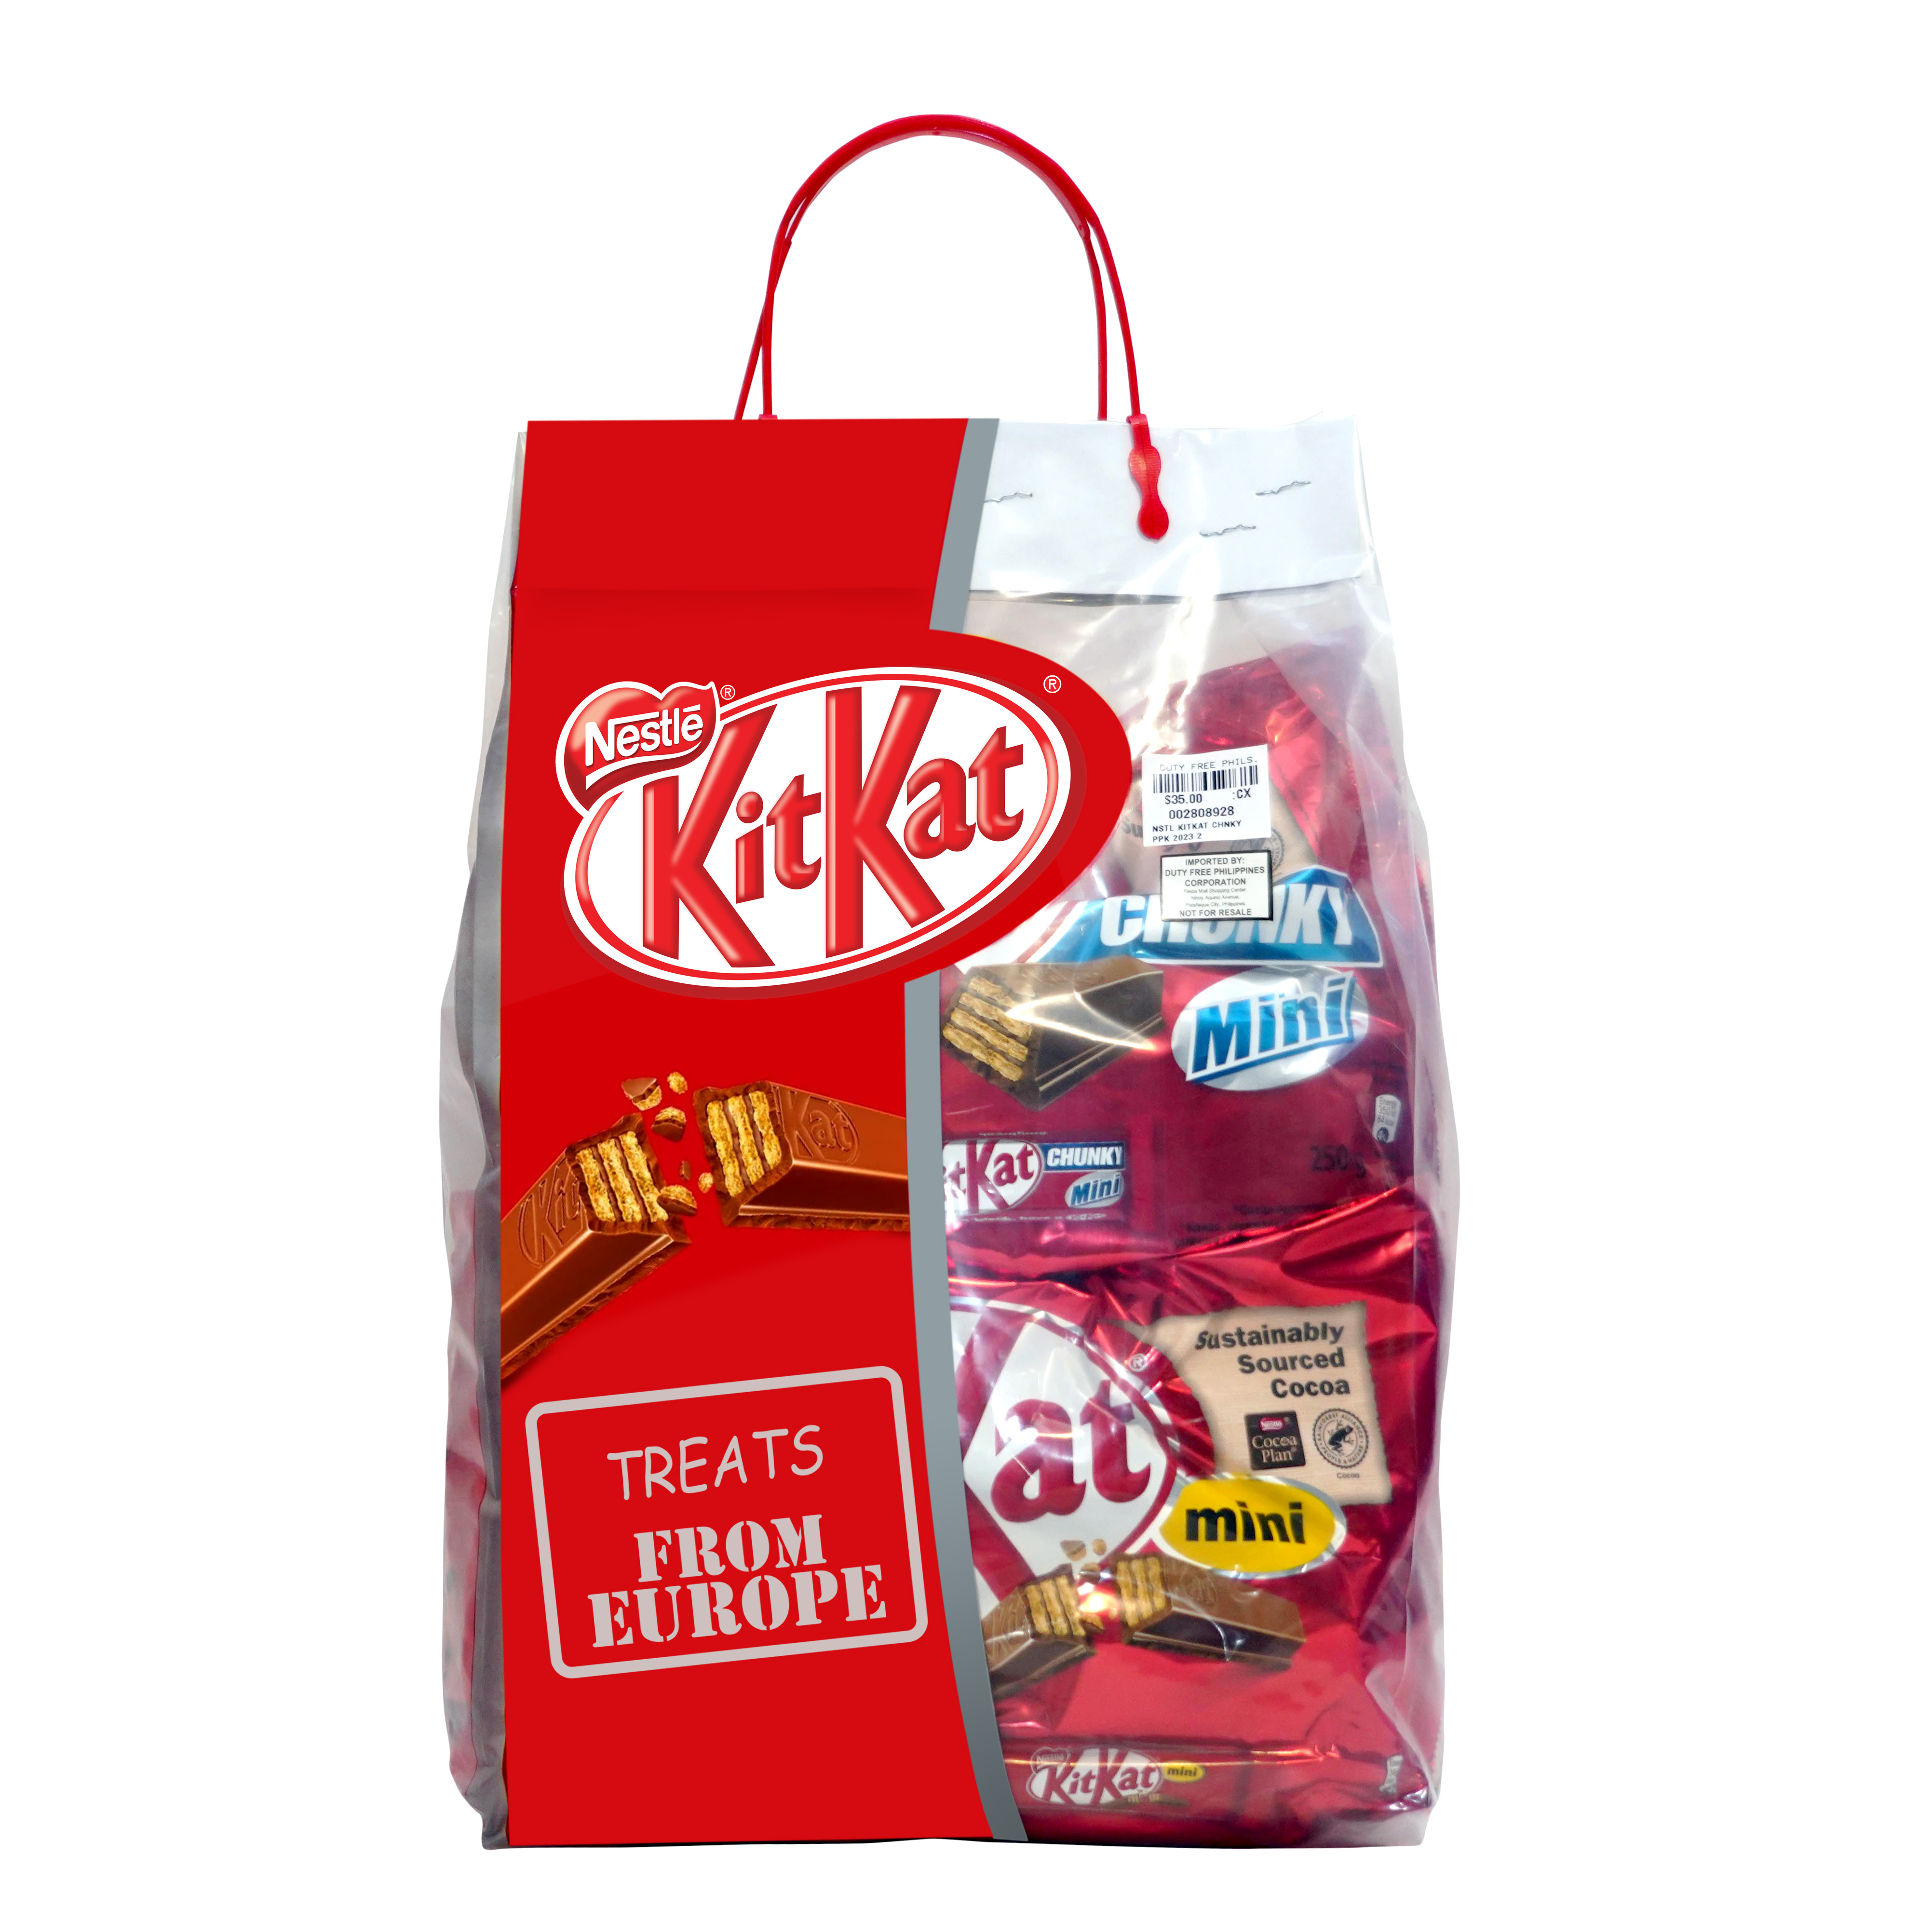 Nestlé KitKat Assorted Pasalubong Pack (14 pcs)